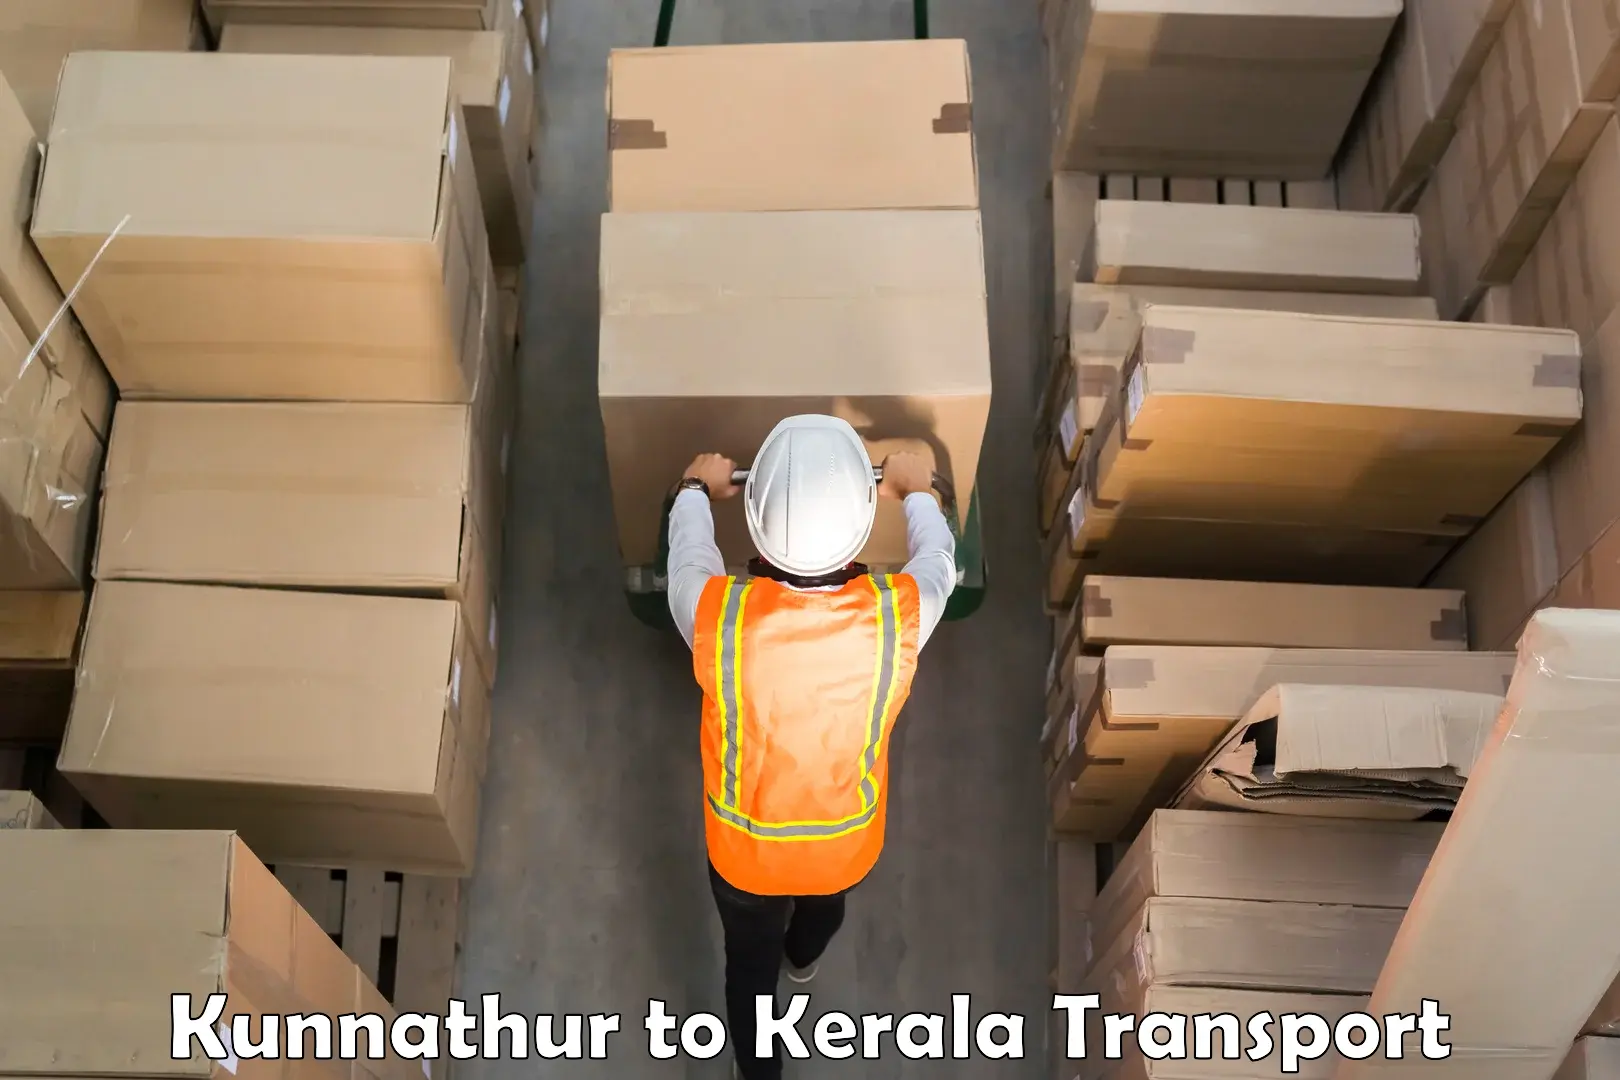 Furniture transport service Kunnathur to Muvattupuzha